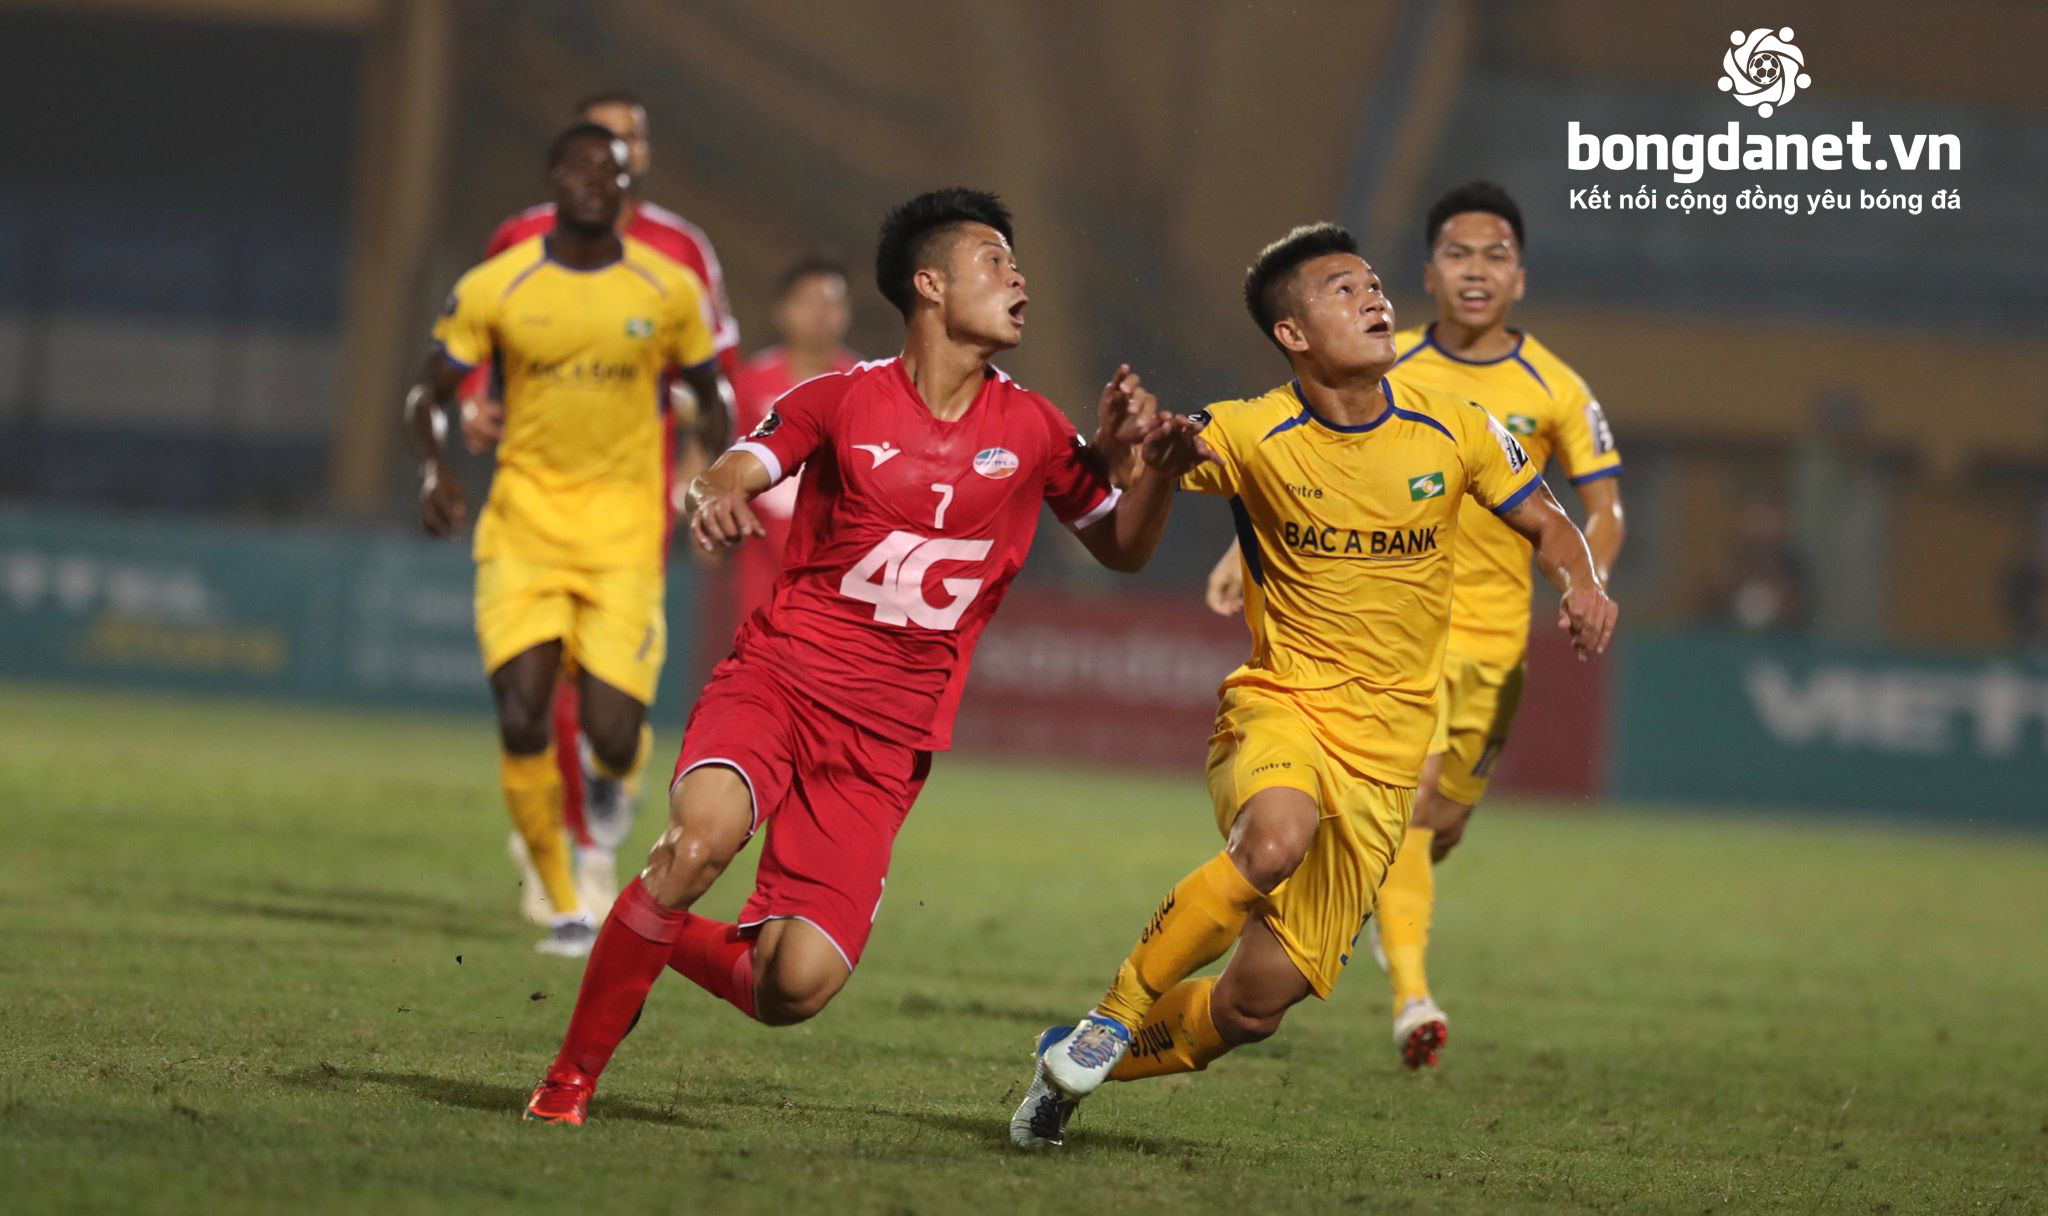 Kết quả vòng 12 V.League 2019: Sài Gòn vs SLNA, 19h ngày 31/5